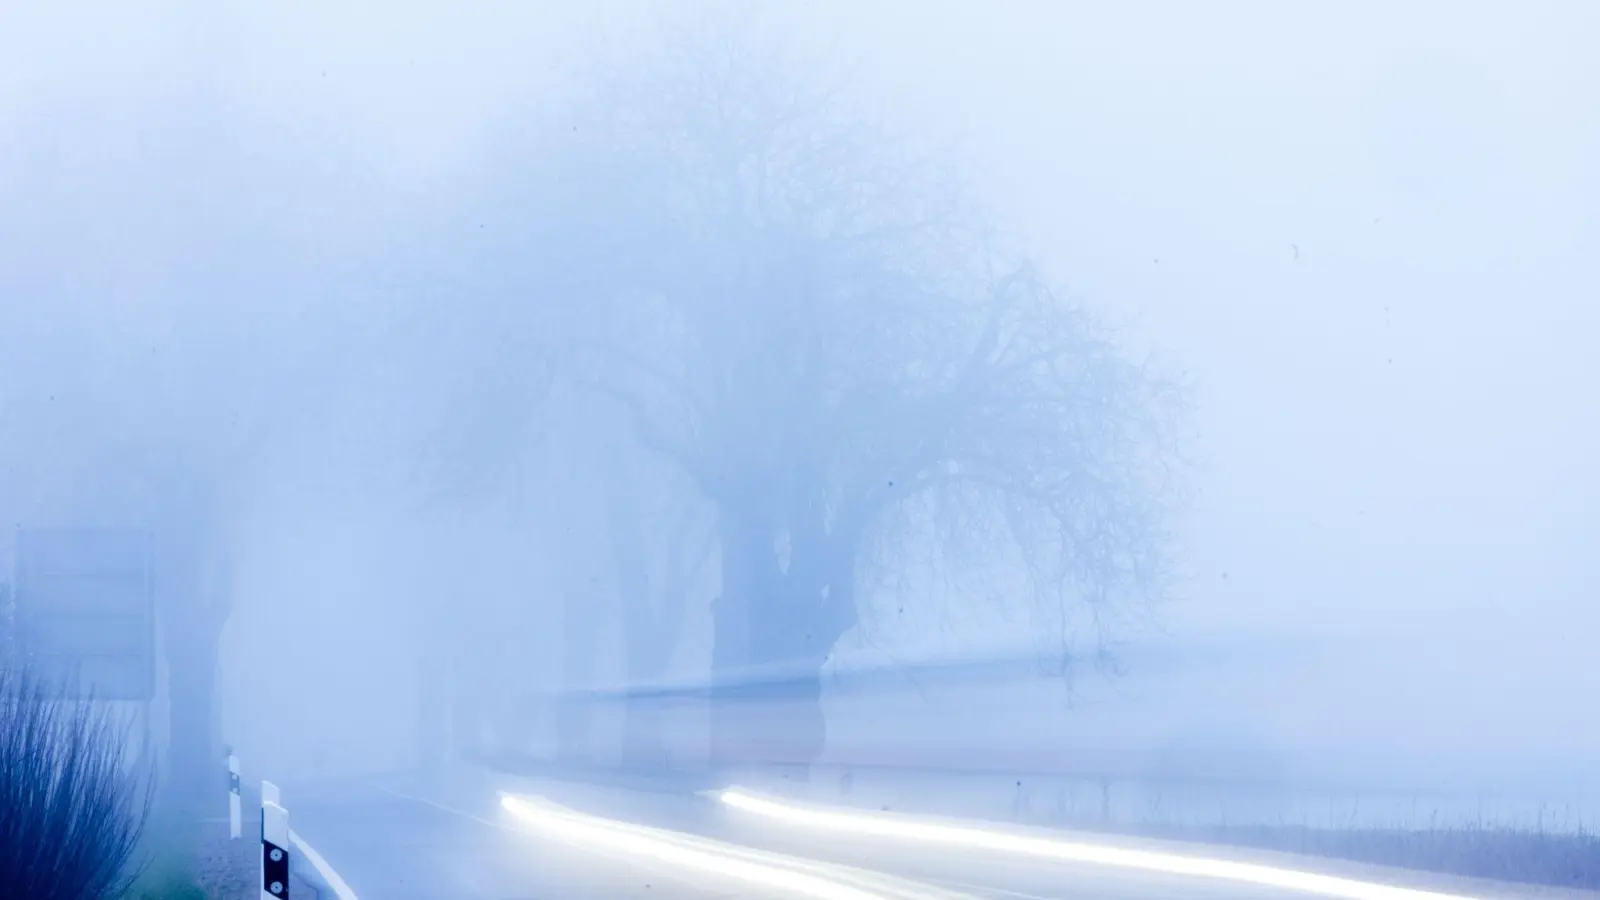 Wählen Autofahrer die falsche Beleuchtung bei Nebel, kann sich die Straße in eine weiße Wand verwandeln. (Foto: Jens Büttner/dpa/dpa-tmn)